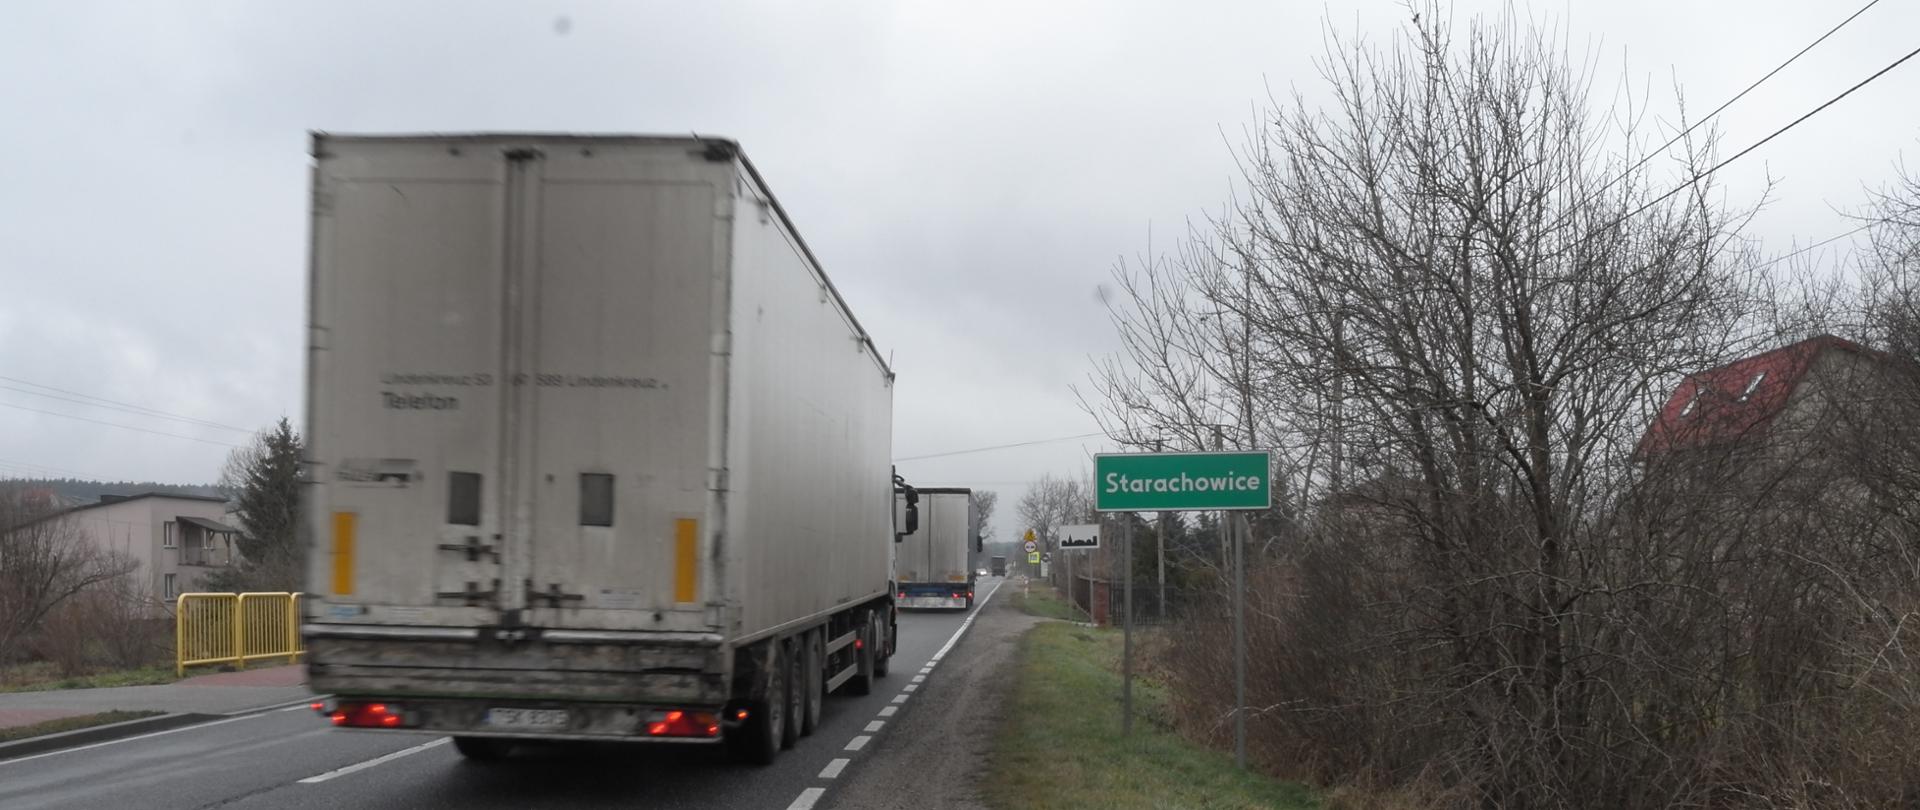 Jednojezdniową drogą krajową jadą samochody ciężarowe jeden za drugim. Przy drodze zielona tablica z nazwą miejscowości Starachowice, dalej tablica oznaczająca teren zabudowany i znaki drogowe. 